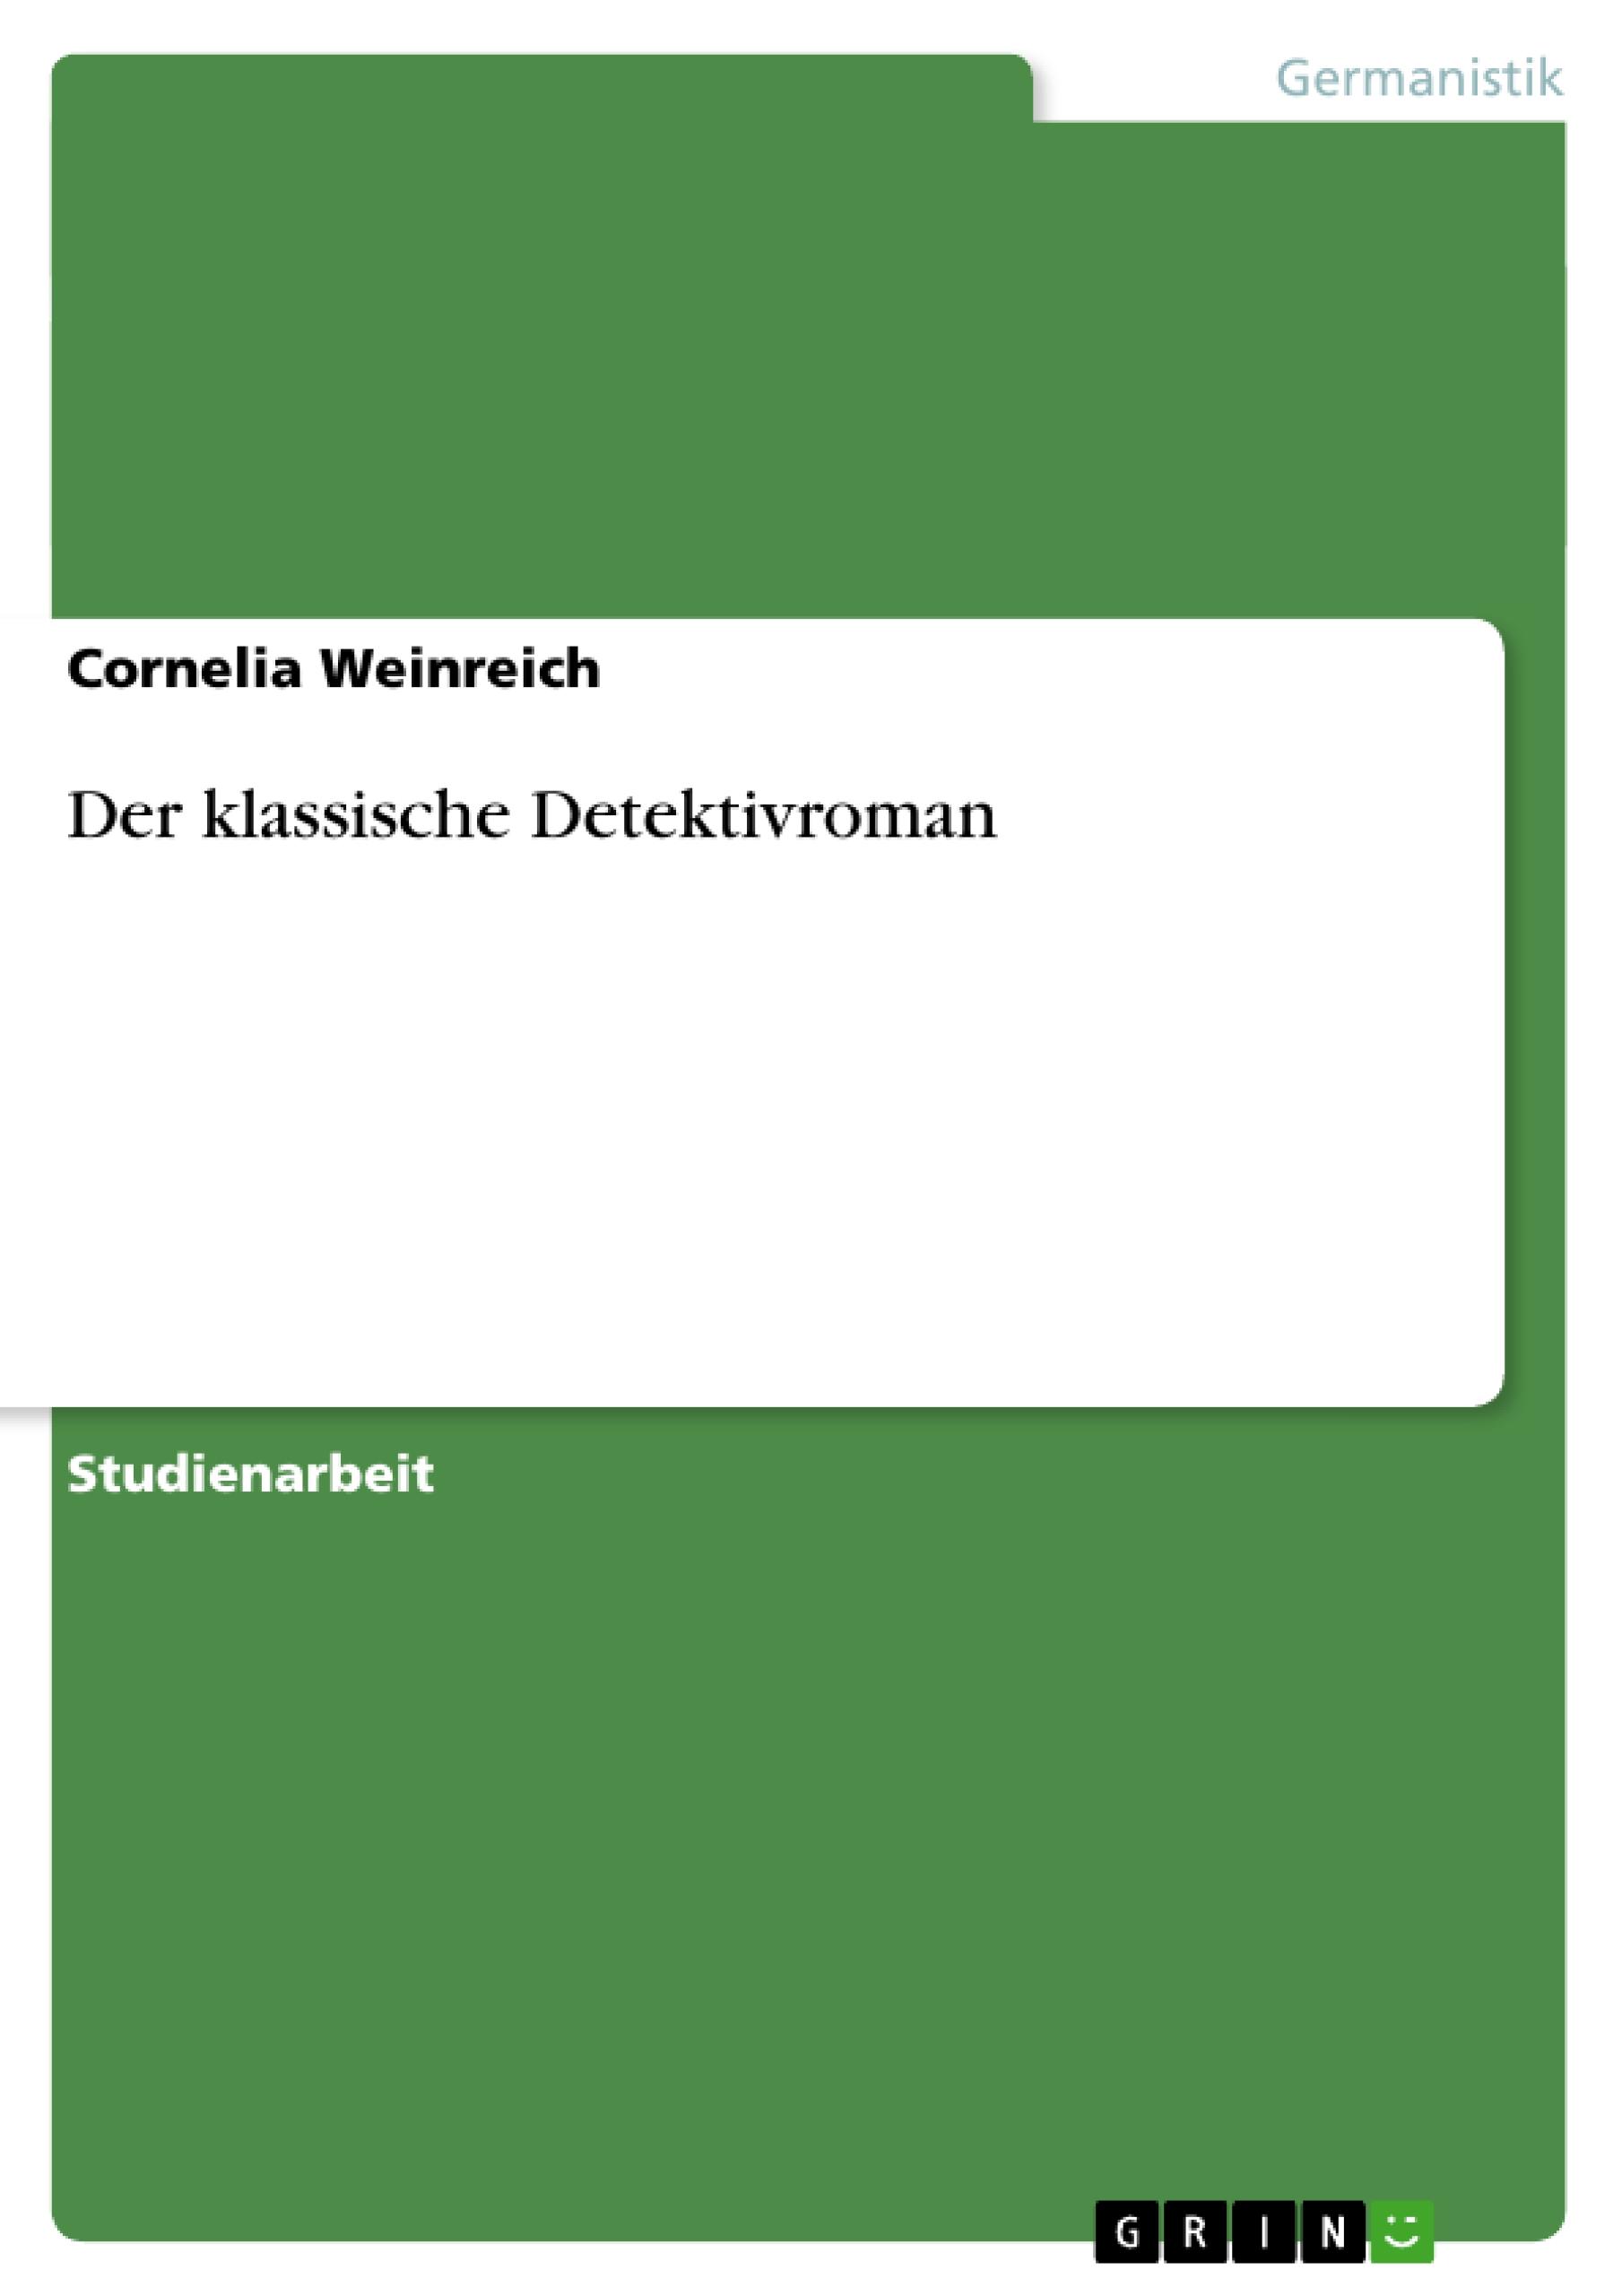 Der klassische Detektivroman - Weinreich, Cornelia